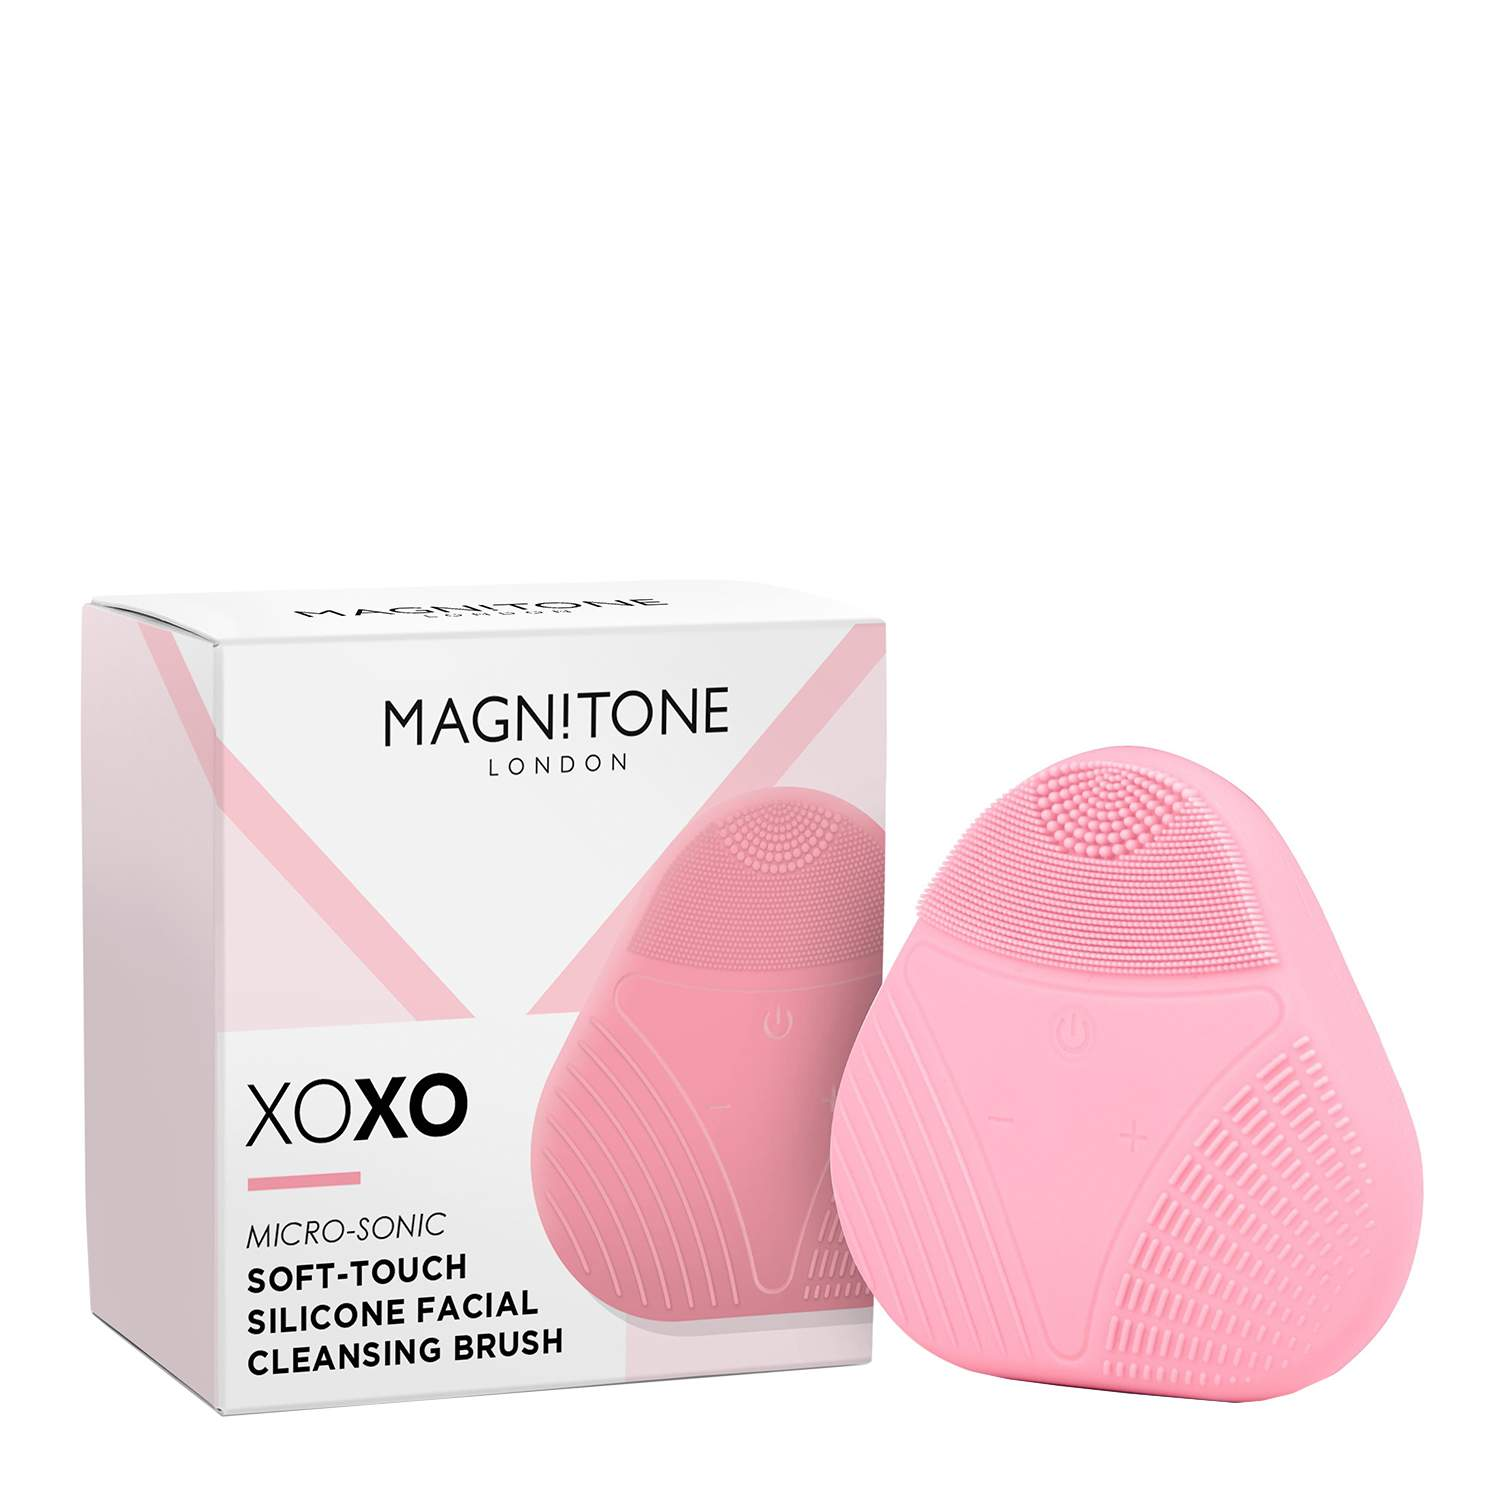 Magnitone London XOXO SoftTouch Silicone Cleansing Brush - Pink Magnitone London XOXO SoftTouch Silicone Cleansing Brush - Pink 1